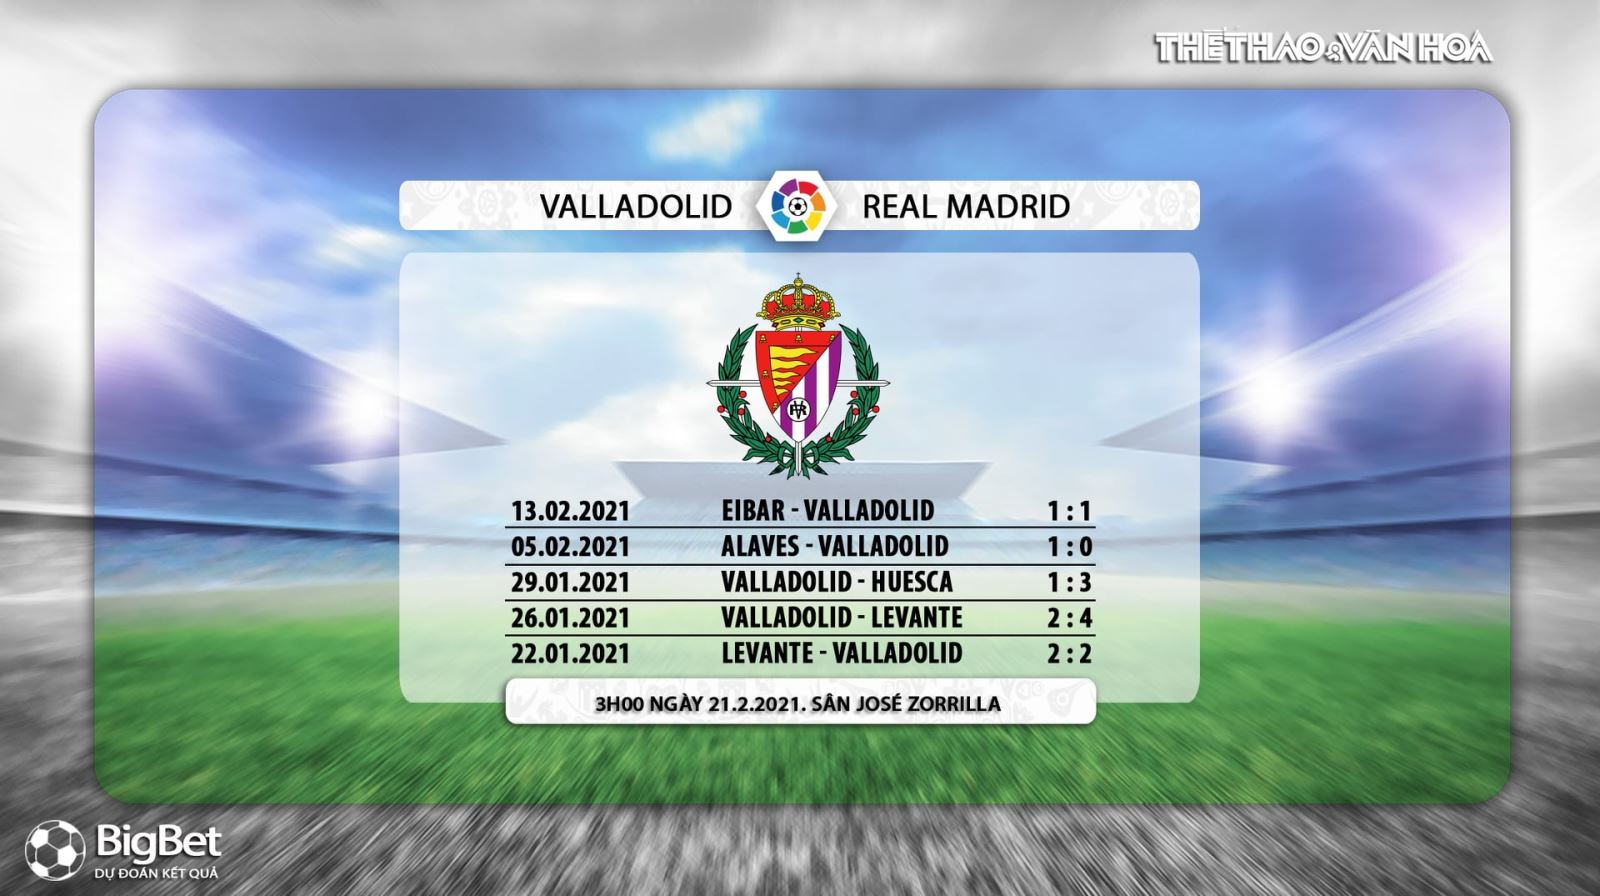 Keo nha cai, Kèo nhà cái, Valladolid vs Real Madrid, BĐTV trực tiếp bóng đá Tây Ban Nha, xem trực tiếp bóng đá La Liga, truc tiep bong da Tay Ban Nha, kèo Real Madrid